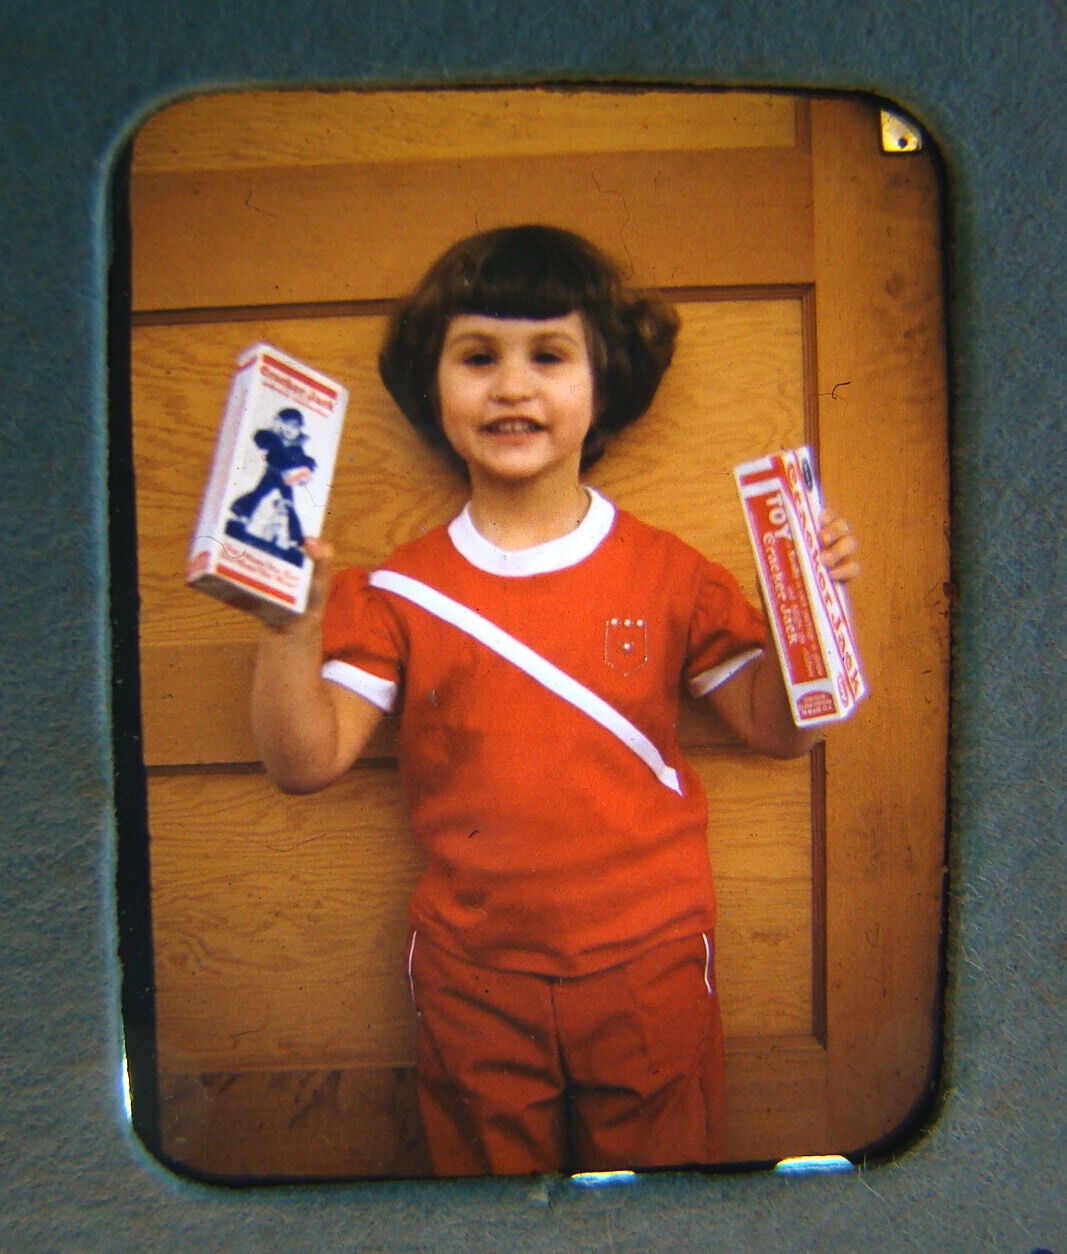 1954 Little Crackerjack Girl Color Amateur Slide Photo old